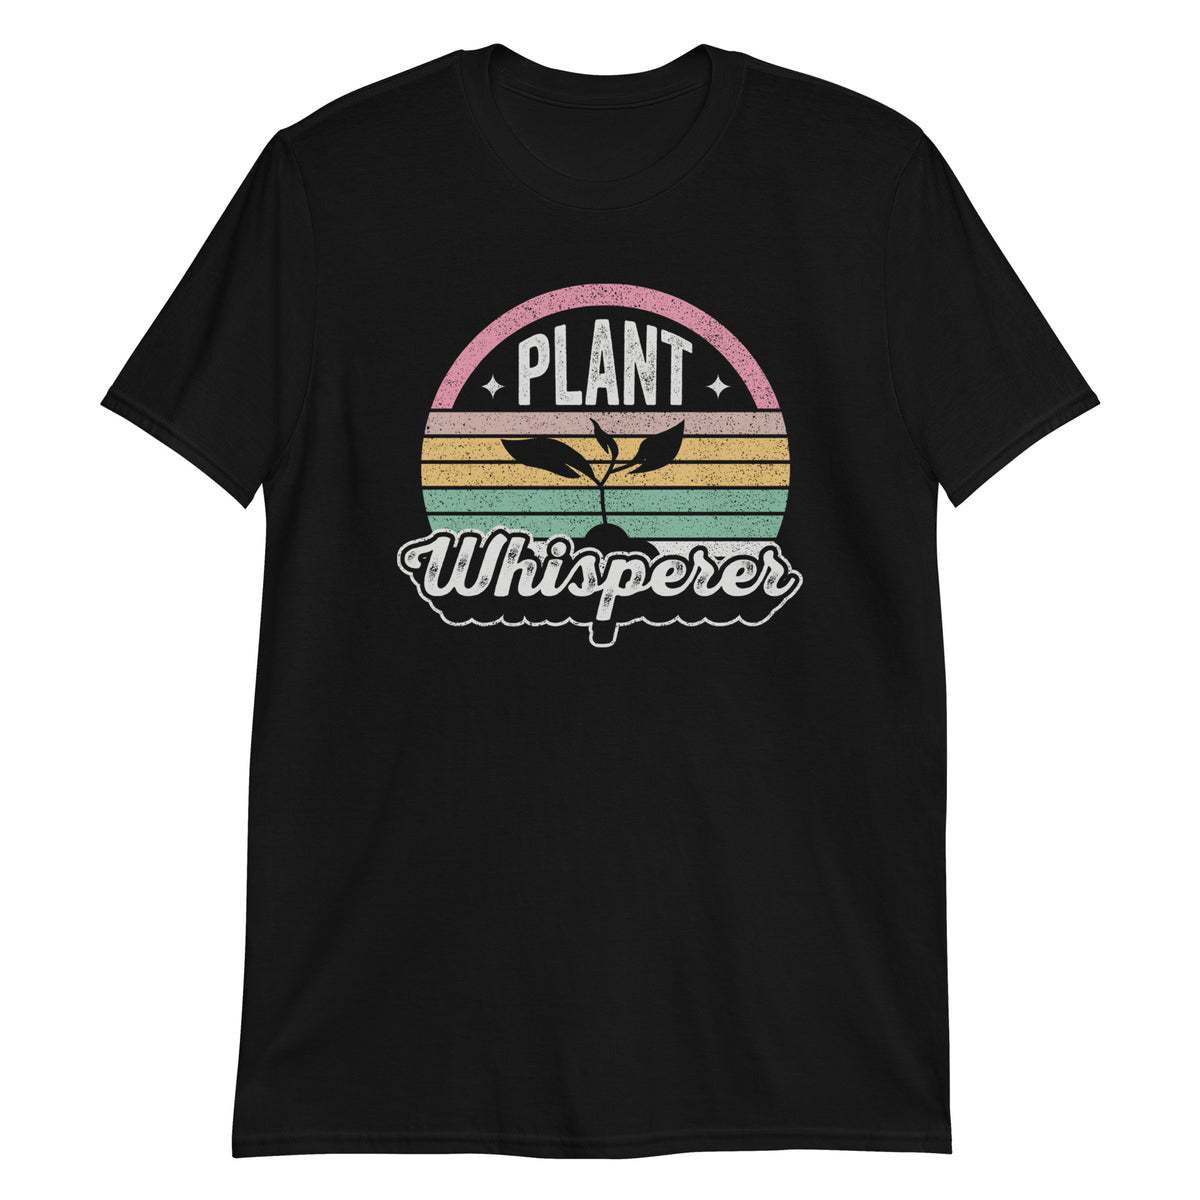 plant Whisperer T-Shirt